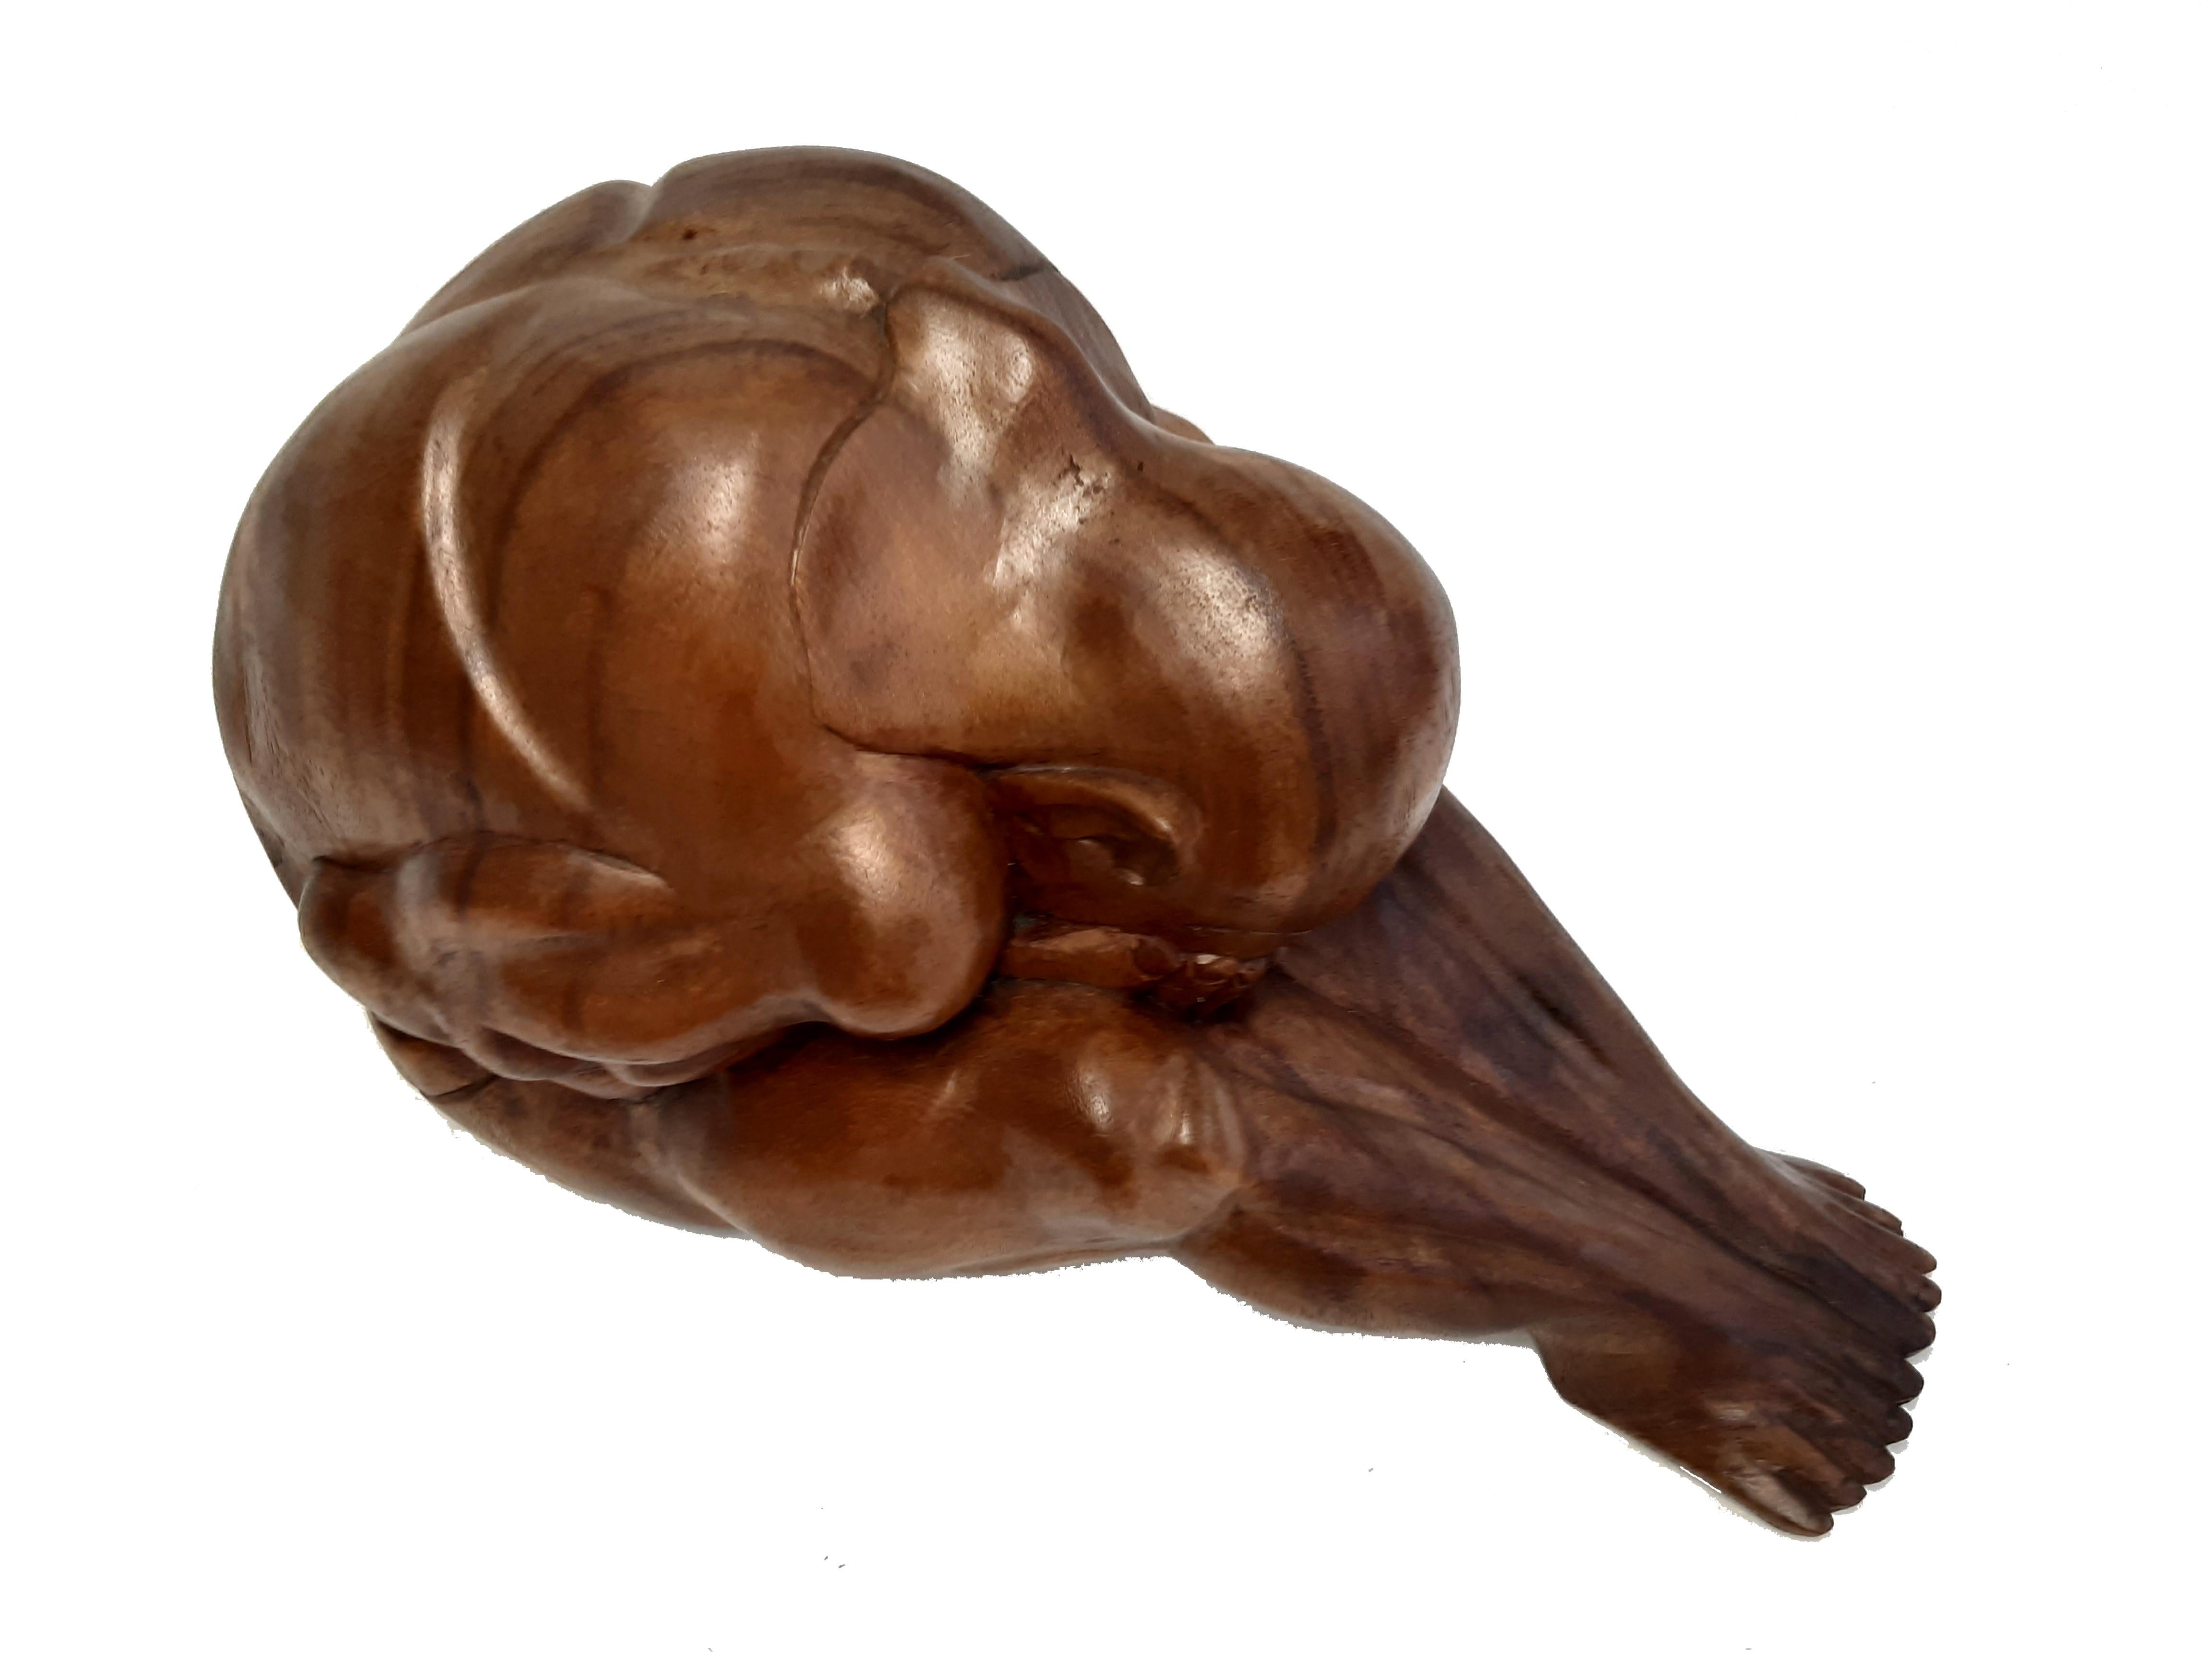 Art Déco Holzfigur sitzender Mann. Hervorragend expressive Darstellung eines muskulösen, nackten, augenscheinlich zutiefst verzweifelten Mannes.